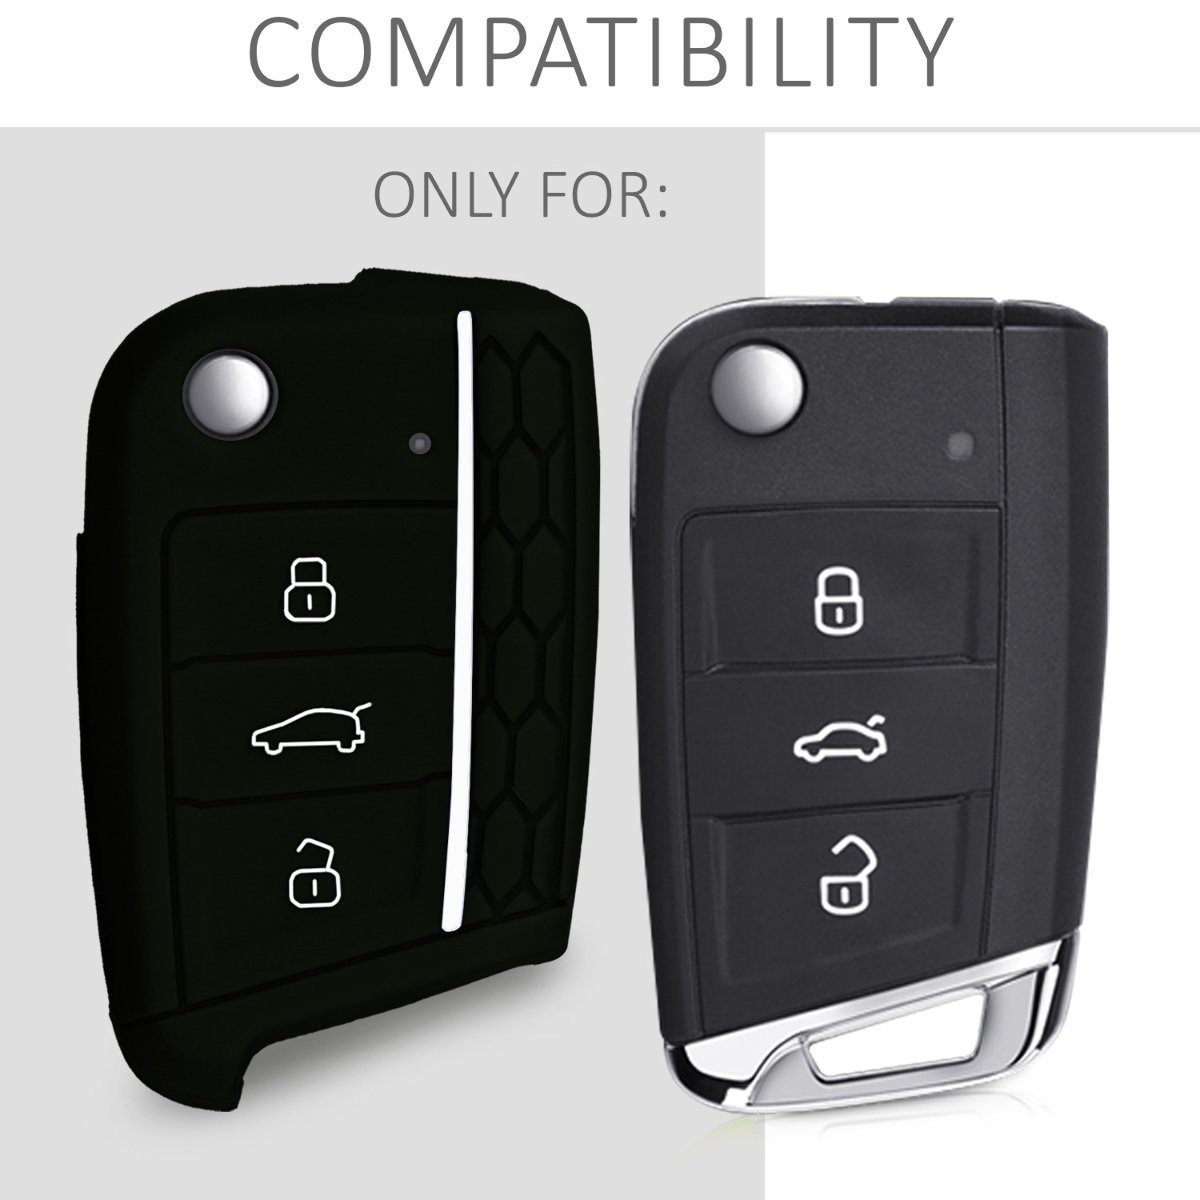 Schlüsselhülle kwmobile Golf Case Schwarz-Weiß Silikon Schlüsseltasche Schlüssel Autoschlüssel Hülle für 7 Cover MK7, VW